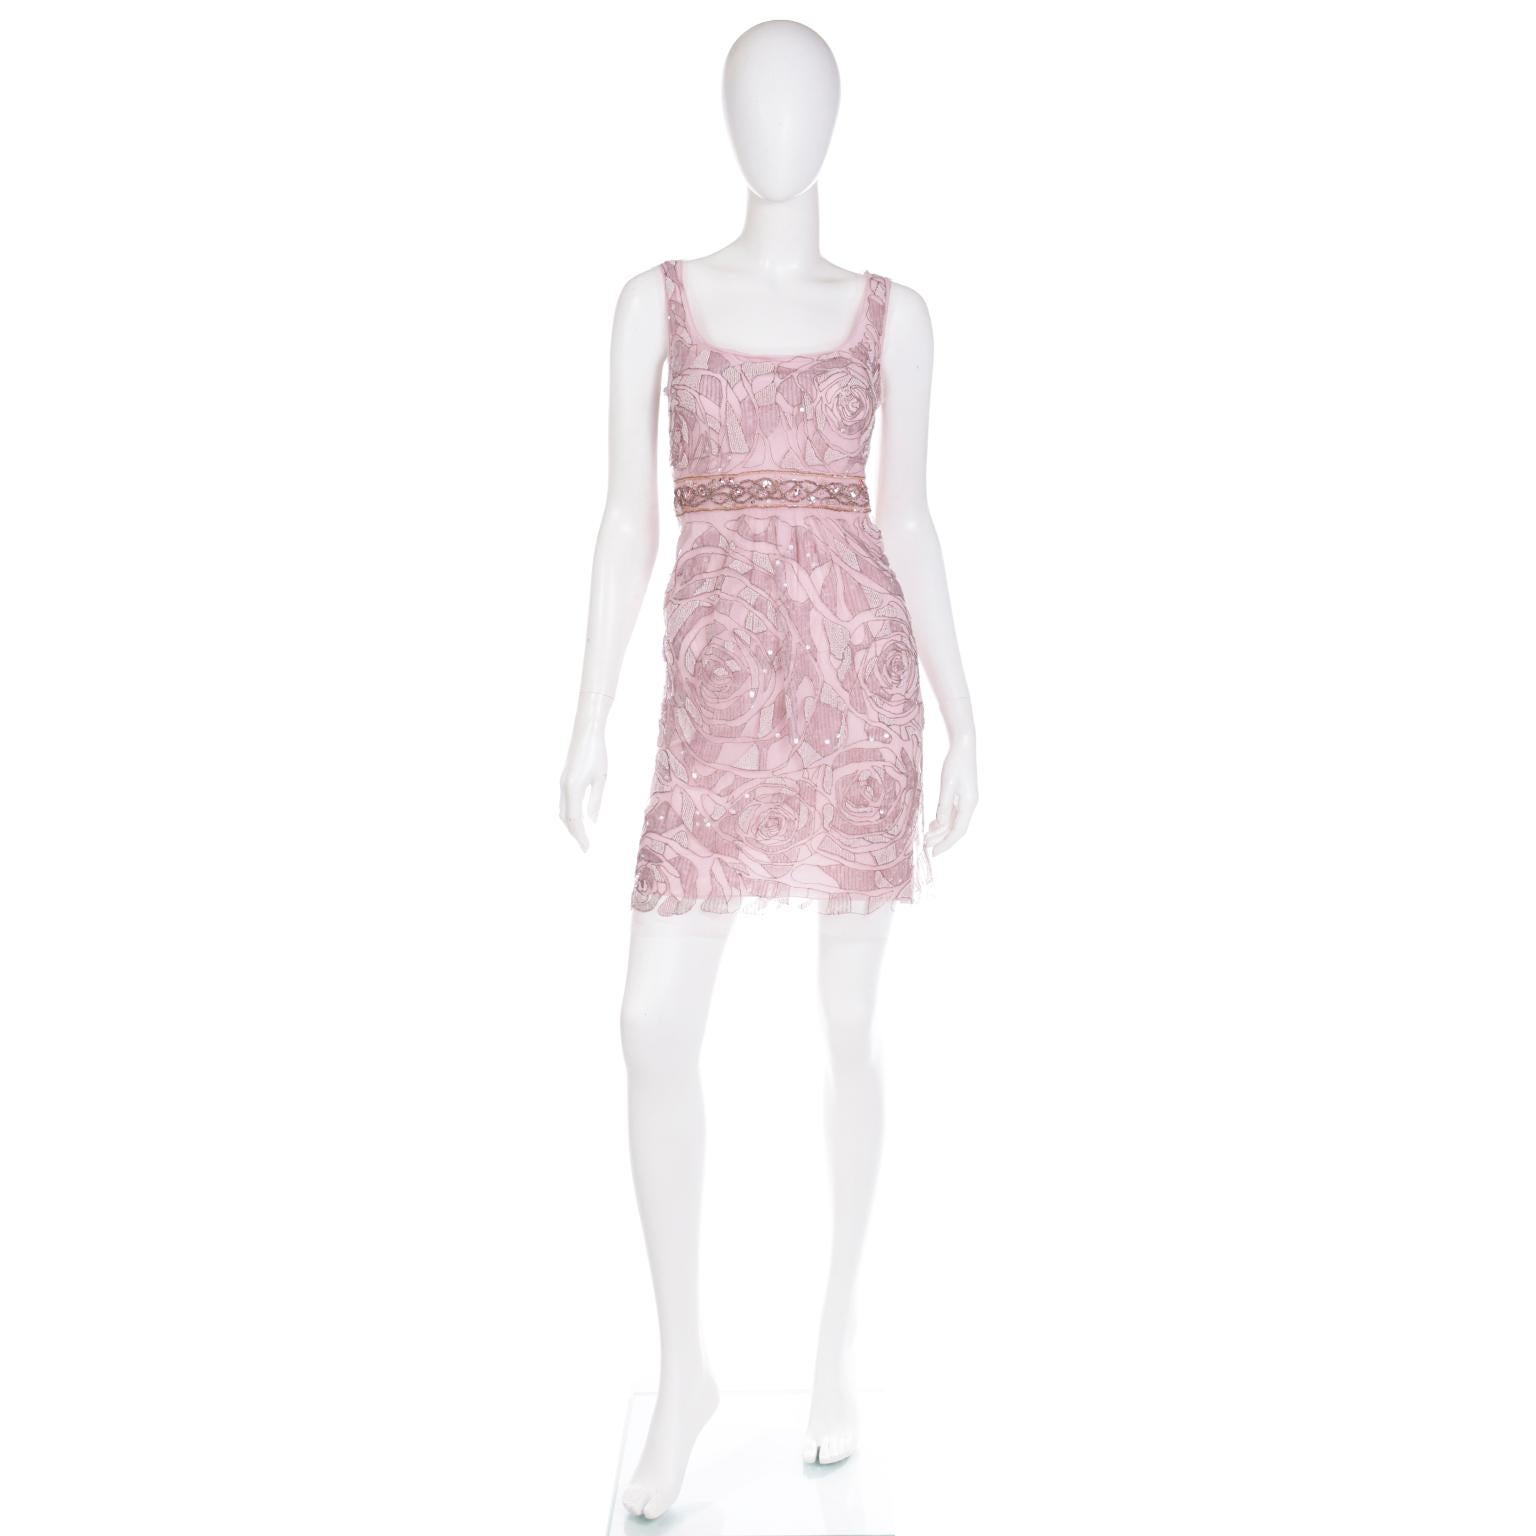 Dieses hübsche, mit Perlen besetzte Vintage-Abendkleid von Emanuel Ungaro besteht aus einem rosafarbenen Unterkleid aus 100 % Seide und einem zarten Überkleid aus Nylonnetz, das mit Metallstickereien, Perlen und schillernden Pailletten verziert ist.